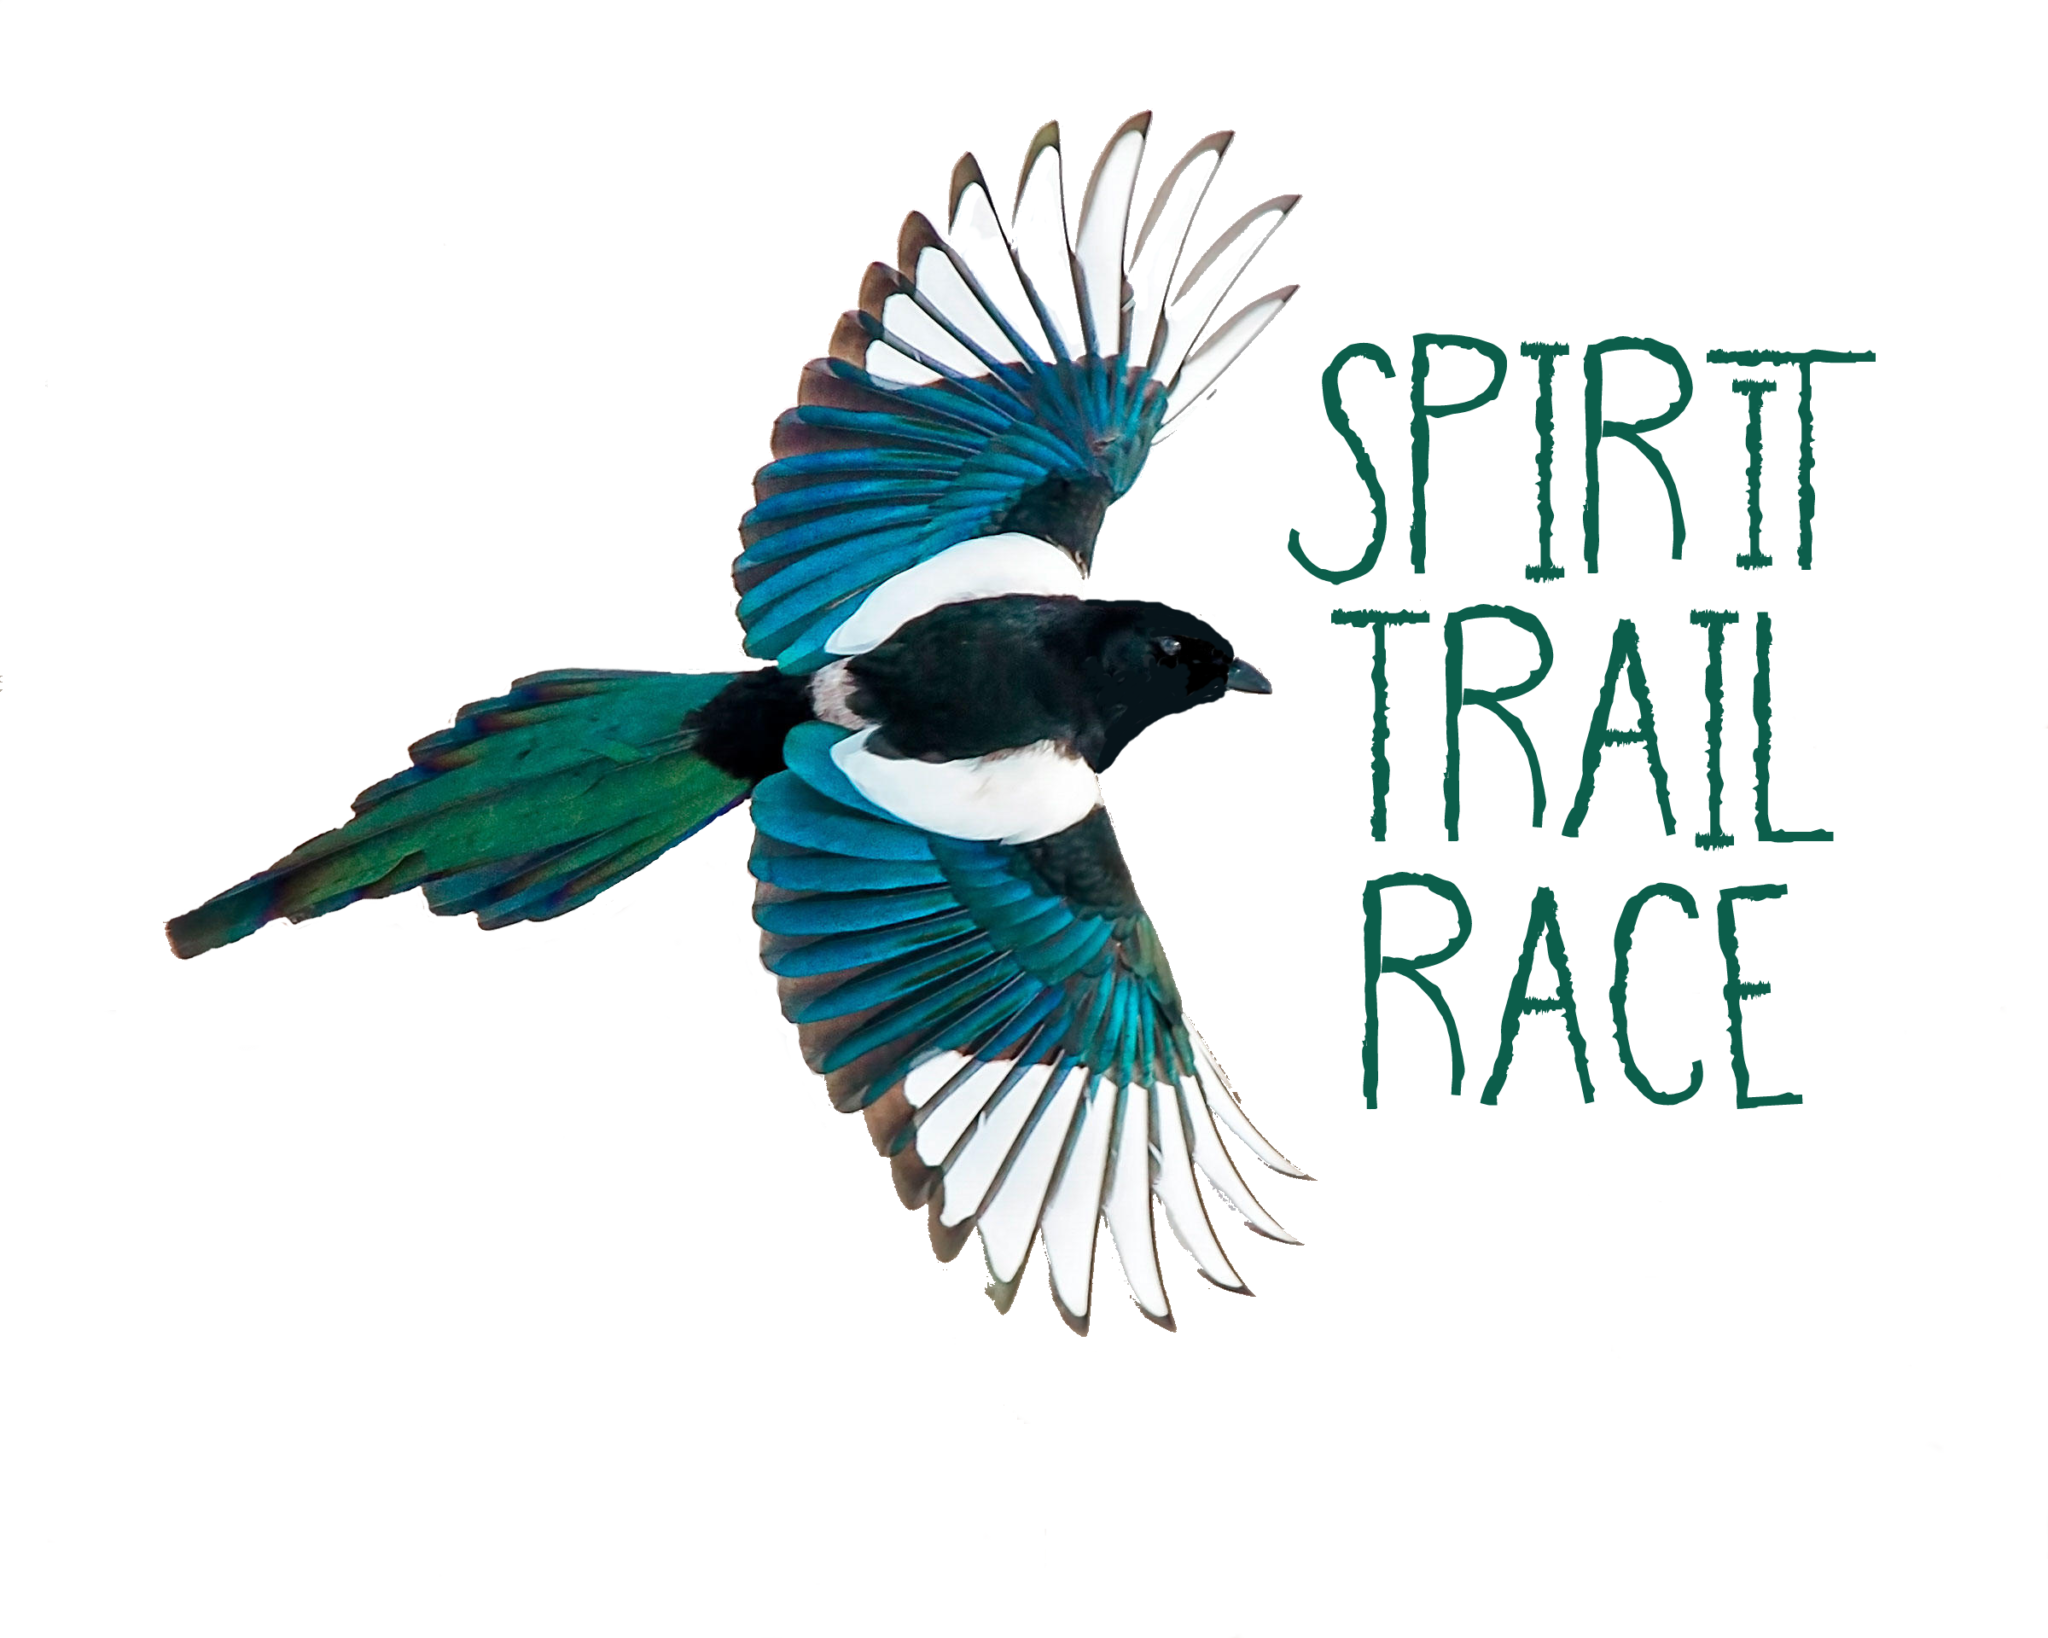 Spirit Trail Race logo on RaceRaves